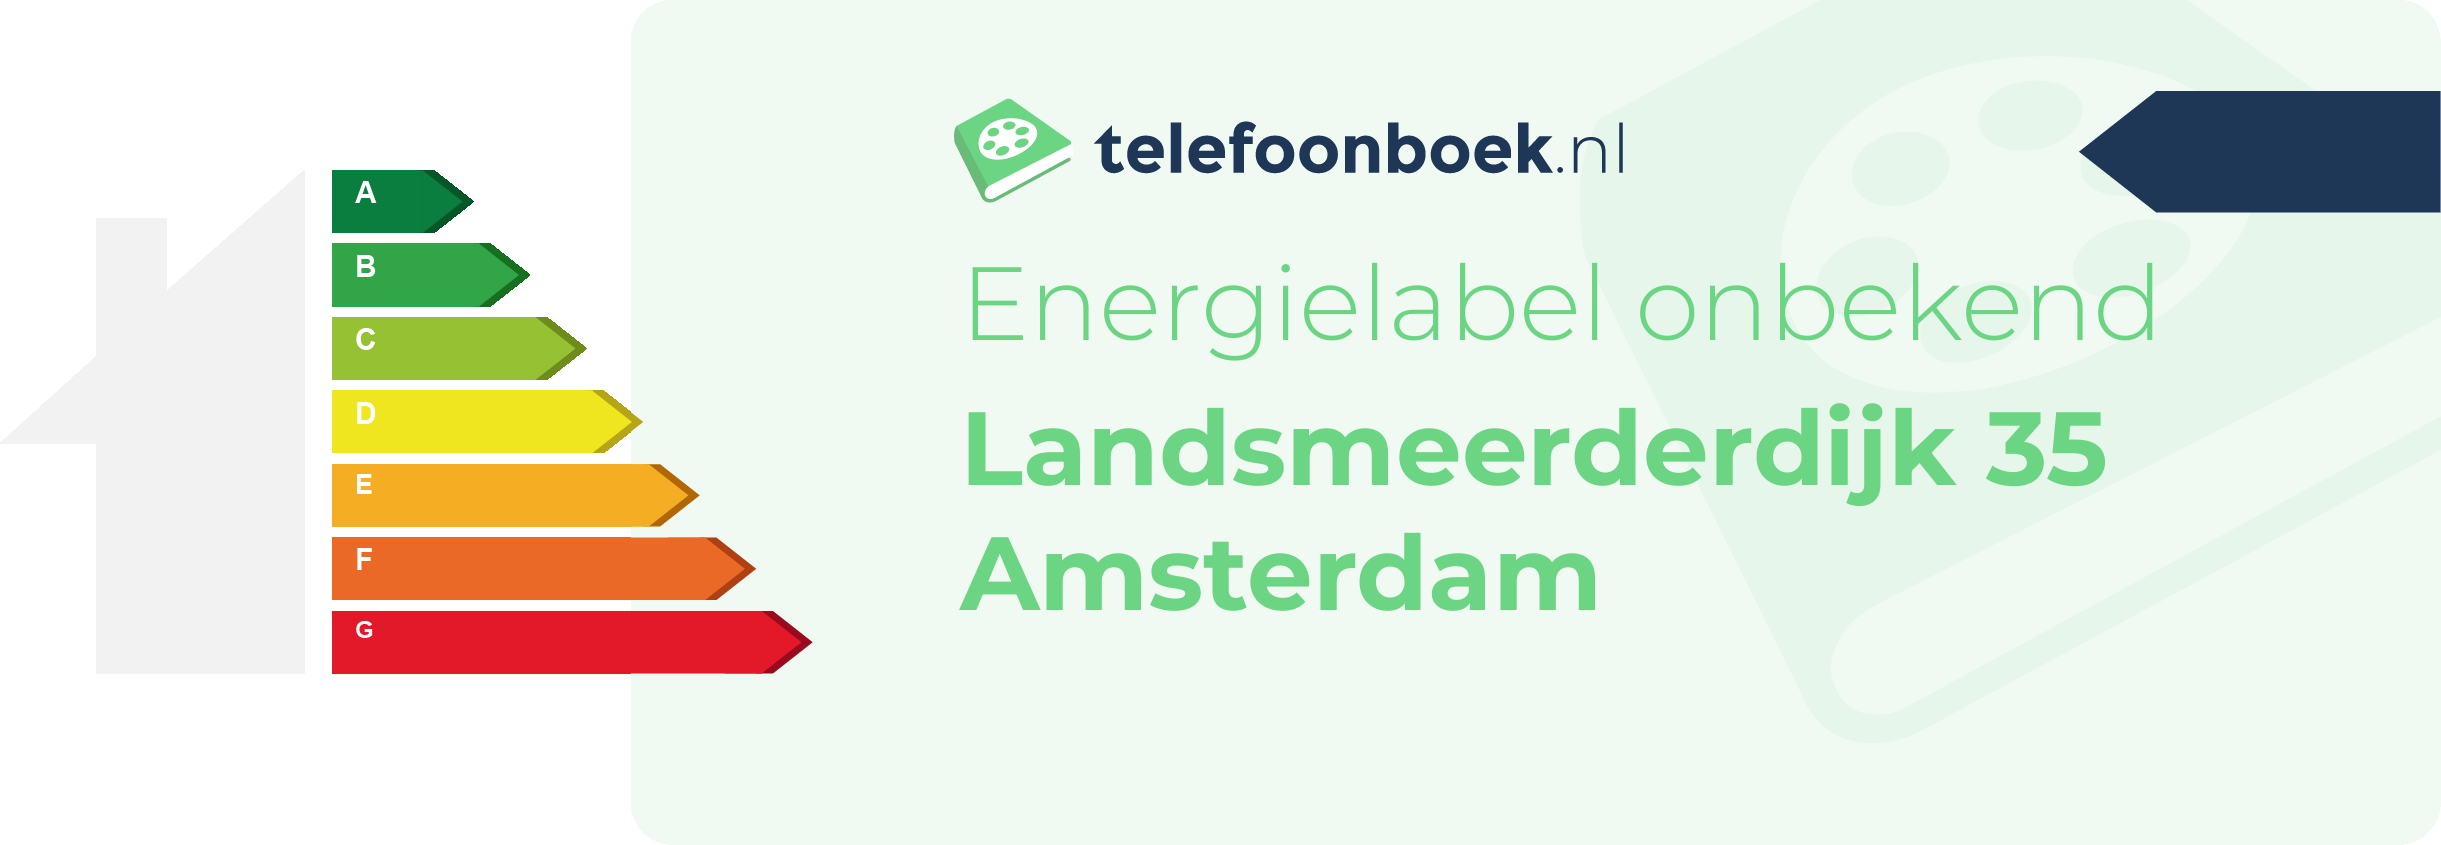 Energielabel Landsmeerderdijk 35 Amsterdam